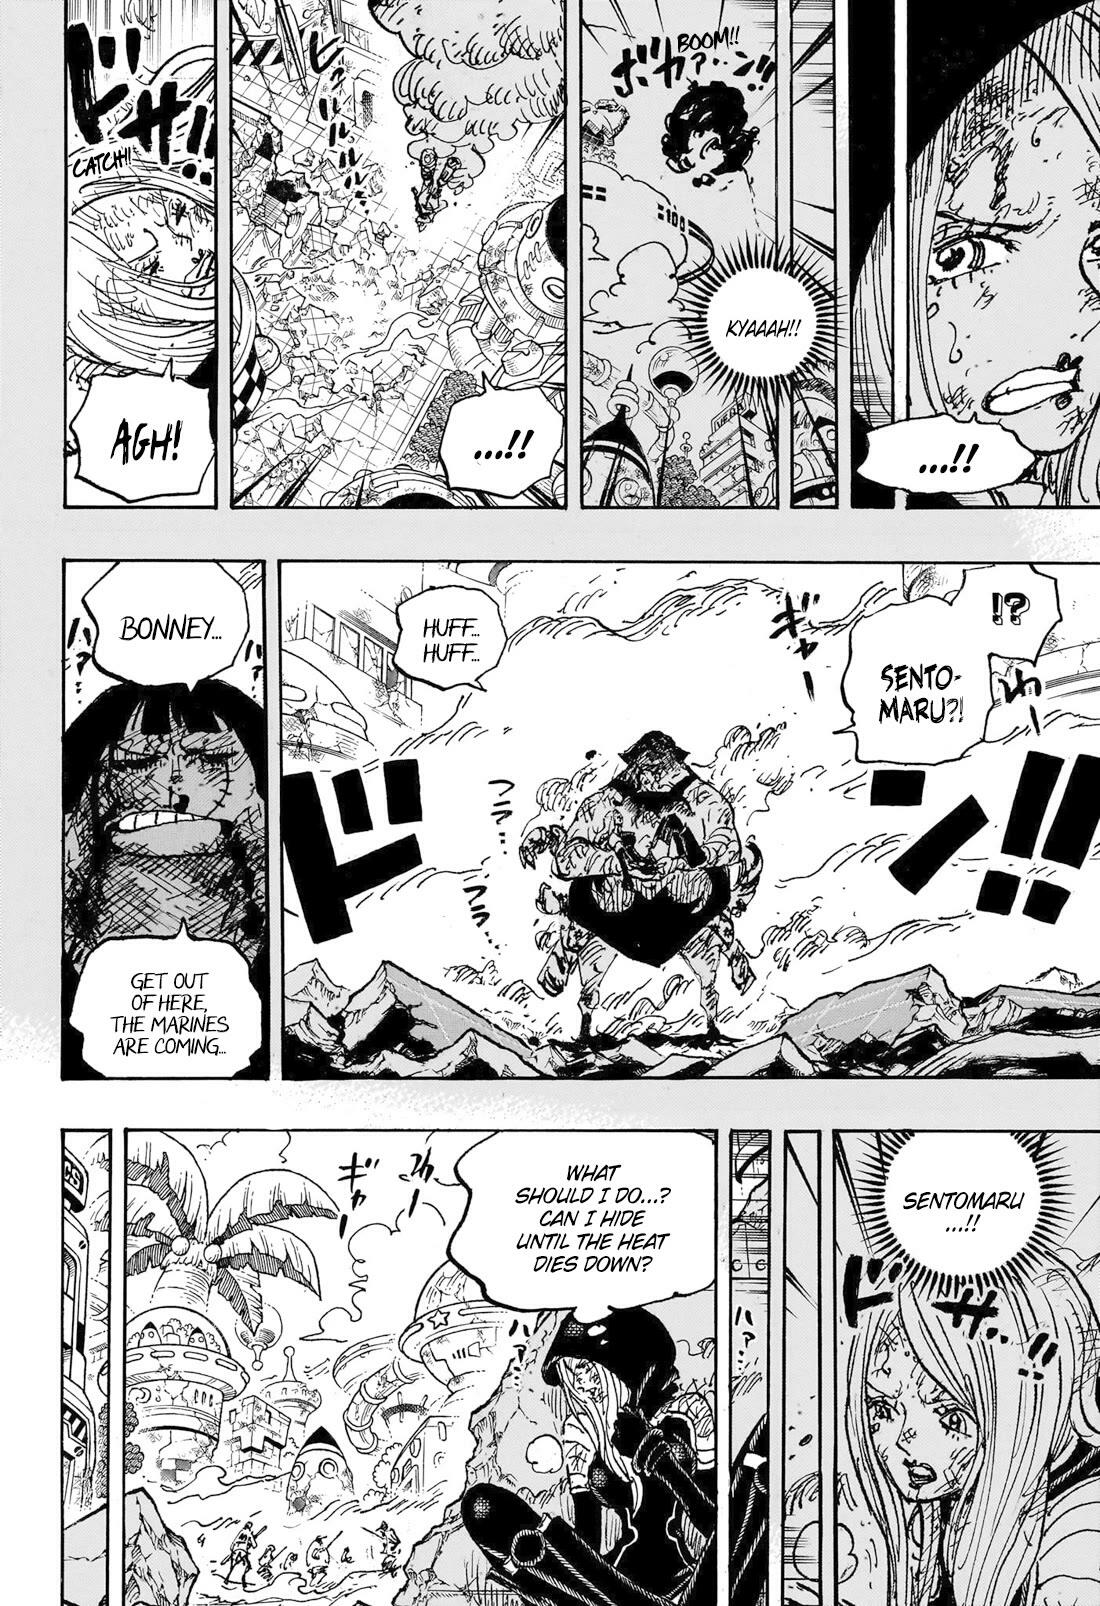 Read One Piece Chapter 1093: Luffy Vs. Kizaru on Mangakakalot